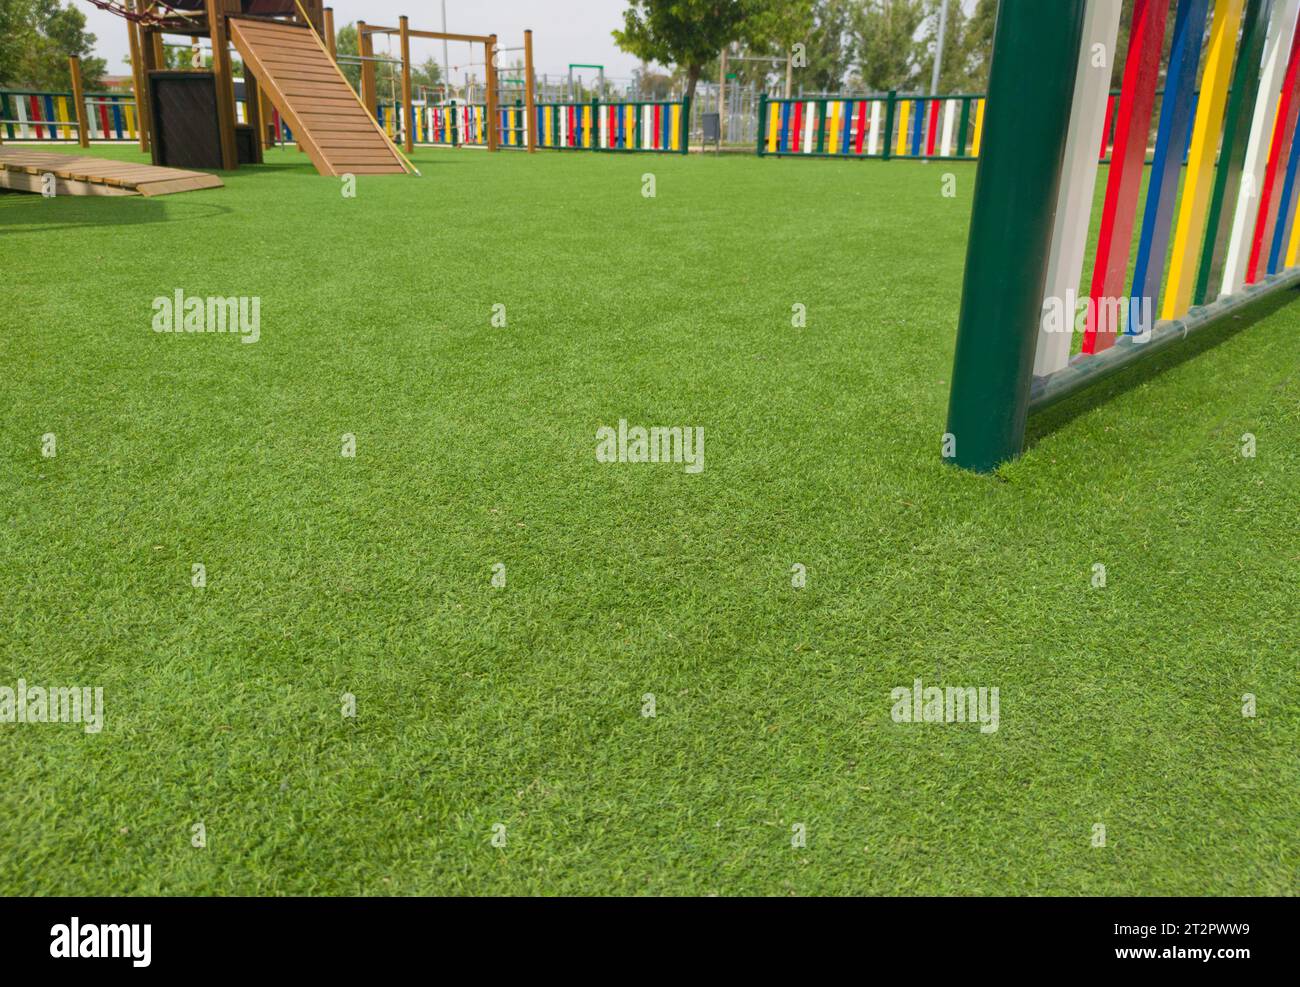 Pavimento in erba verde artificiale nel parco giochi. File colorate di pali verniciati disposte intorno Foto Stock